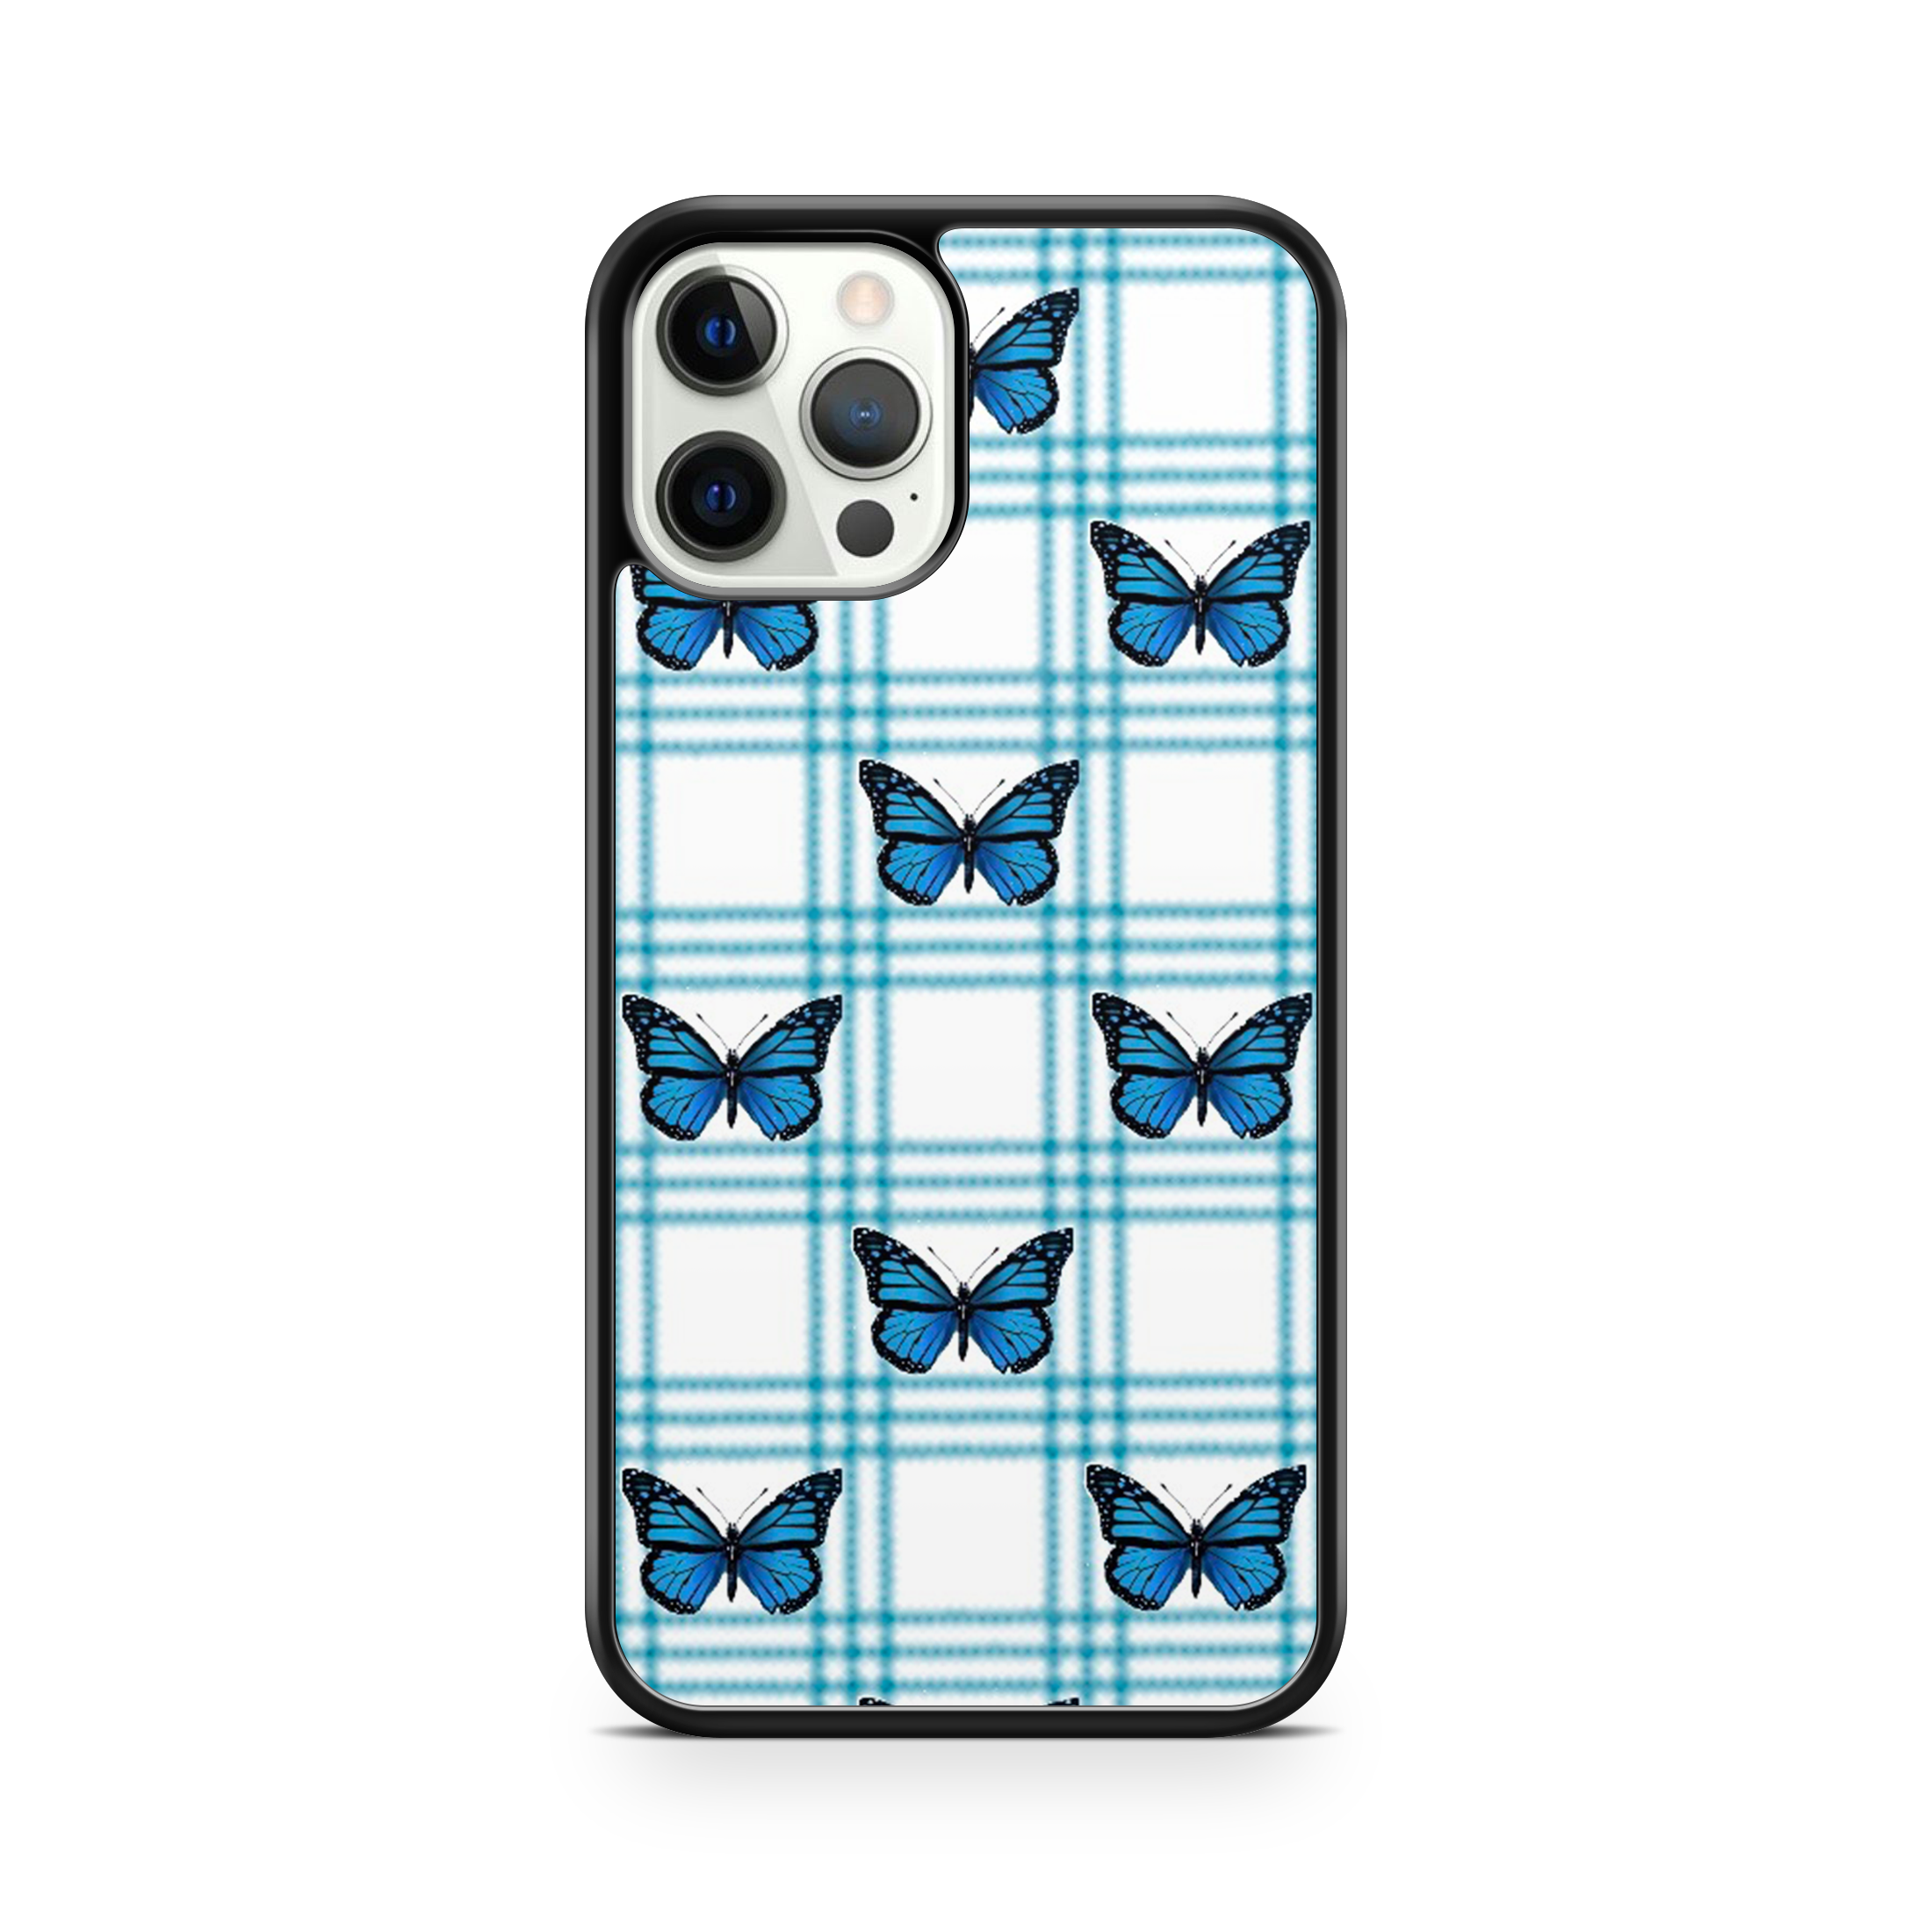 Butterflies and blue checks original design iPhone case